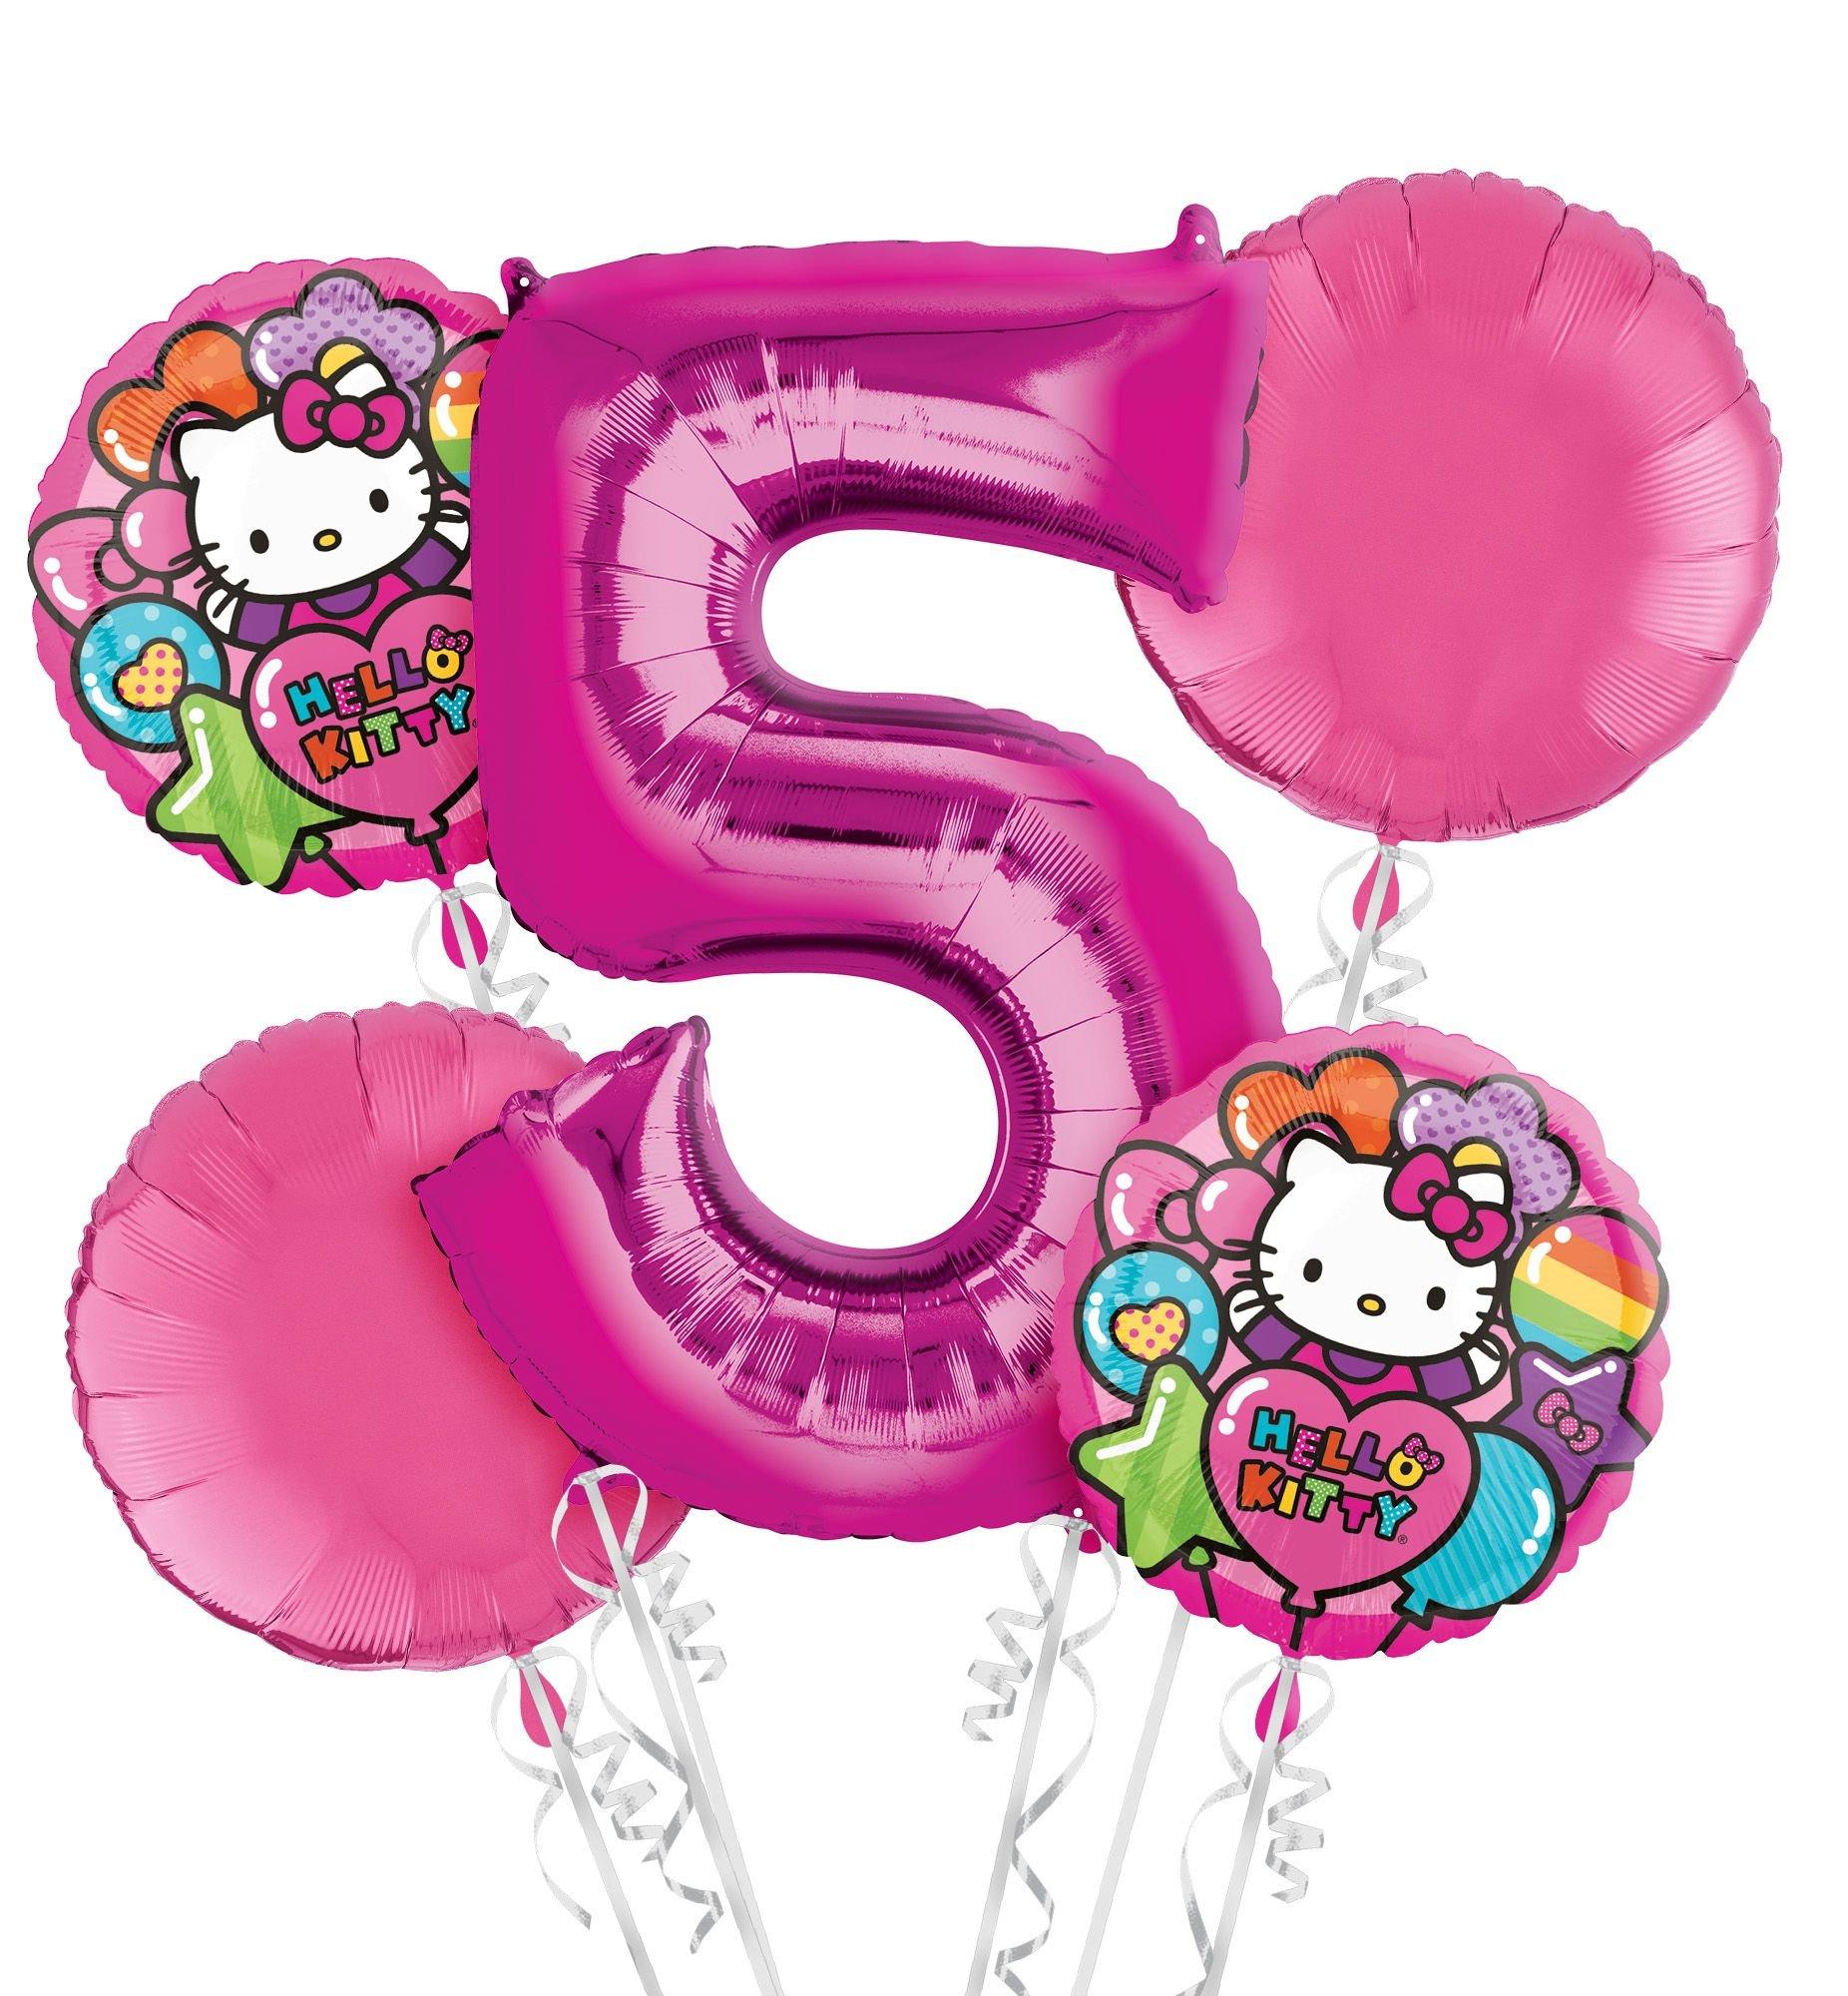 Ballons de Hello Kitty,Hello Kitty Latex Ballons 16 Pièces Ballon